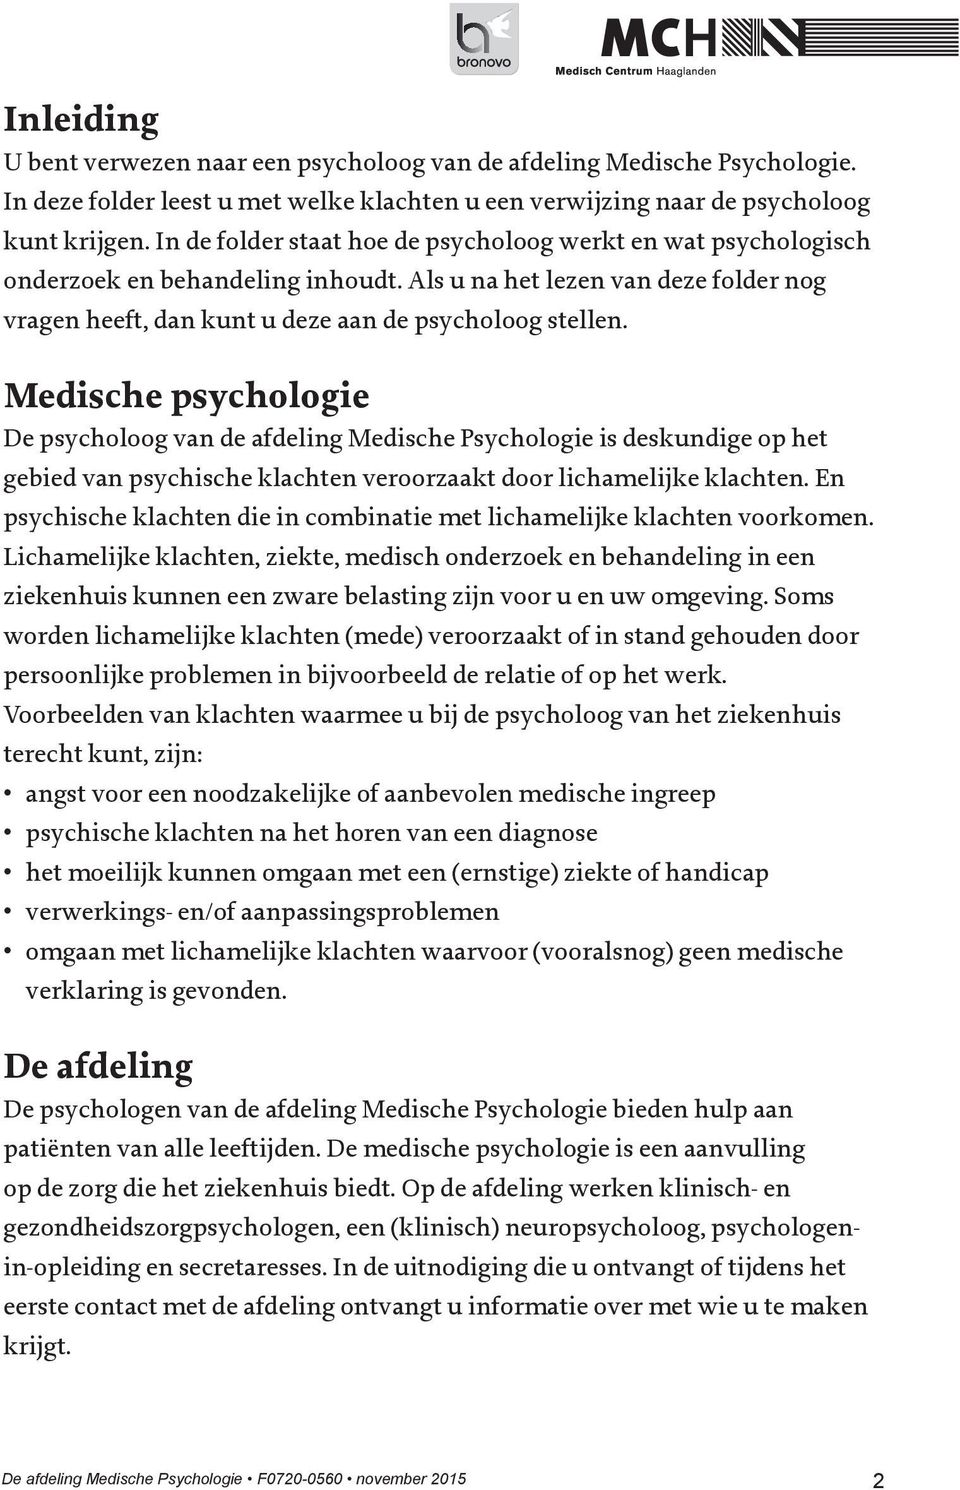 Medische psychologie De psycholoog van de afdeling Medische Psychologie is deskundige op het gebied van psychische klachten veroorzaakt door lichamelijke klachten.